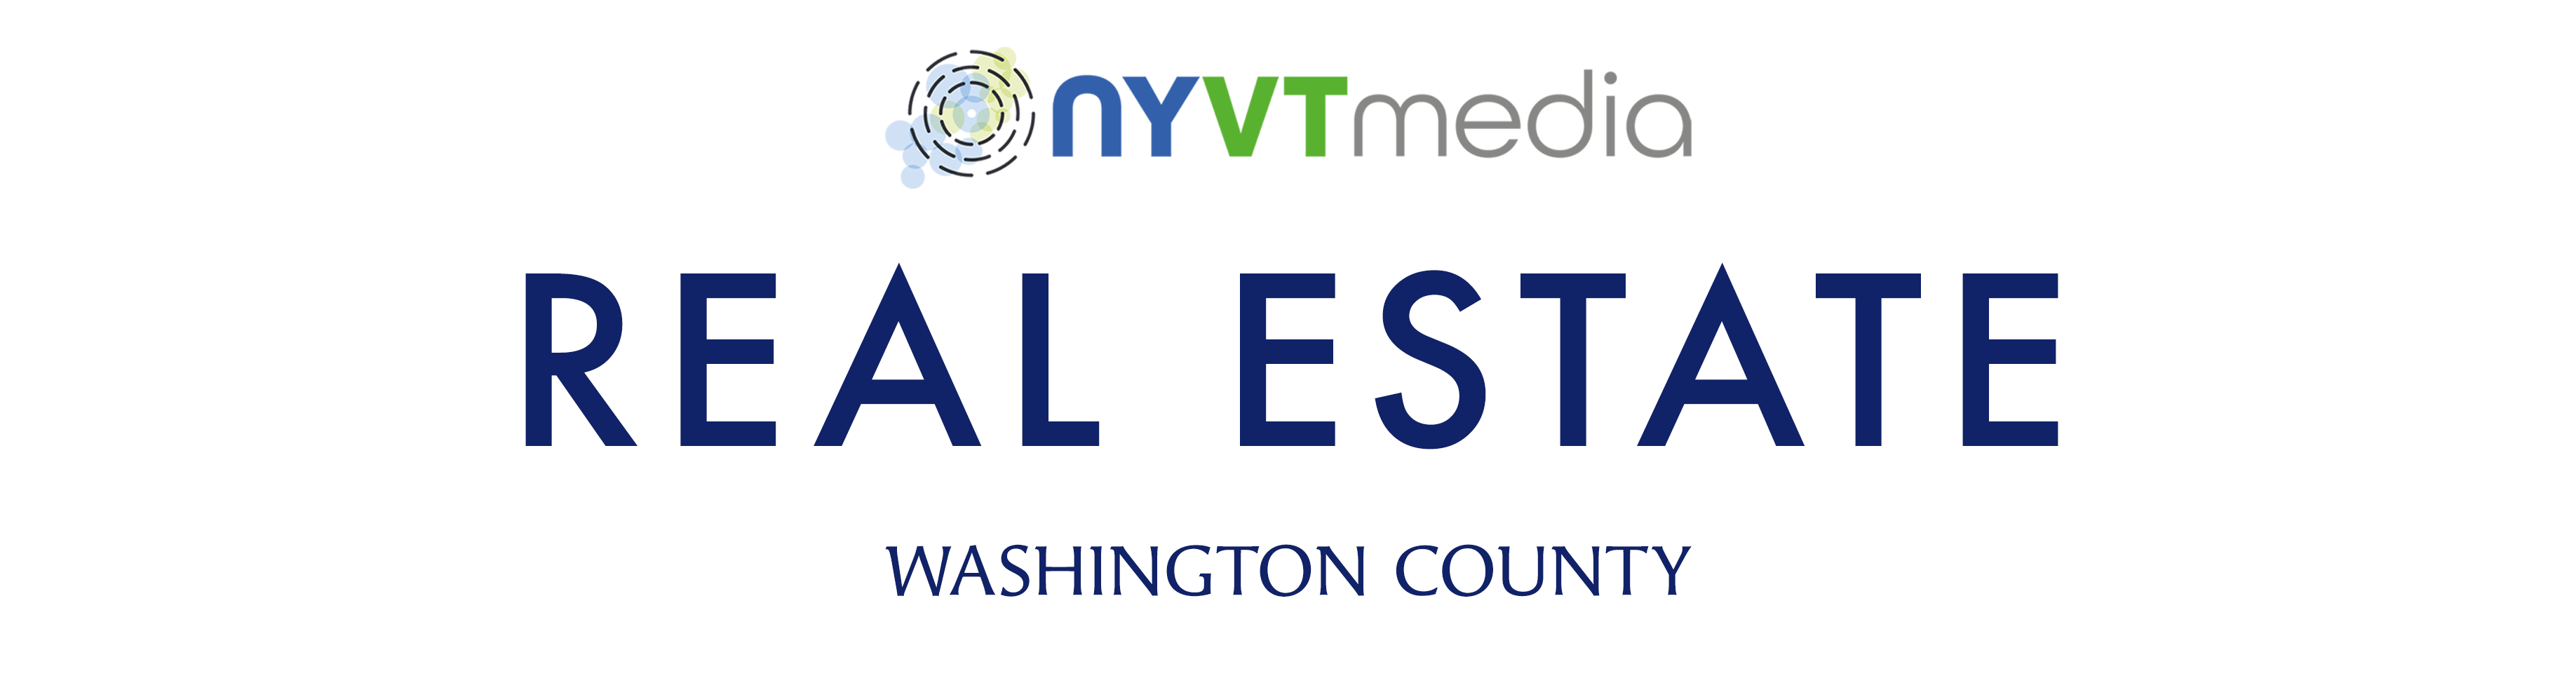 Washington County Real Estate NYVT Media